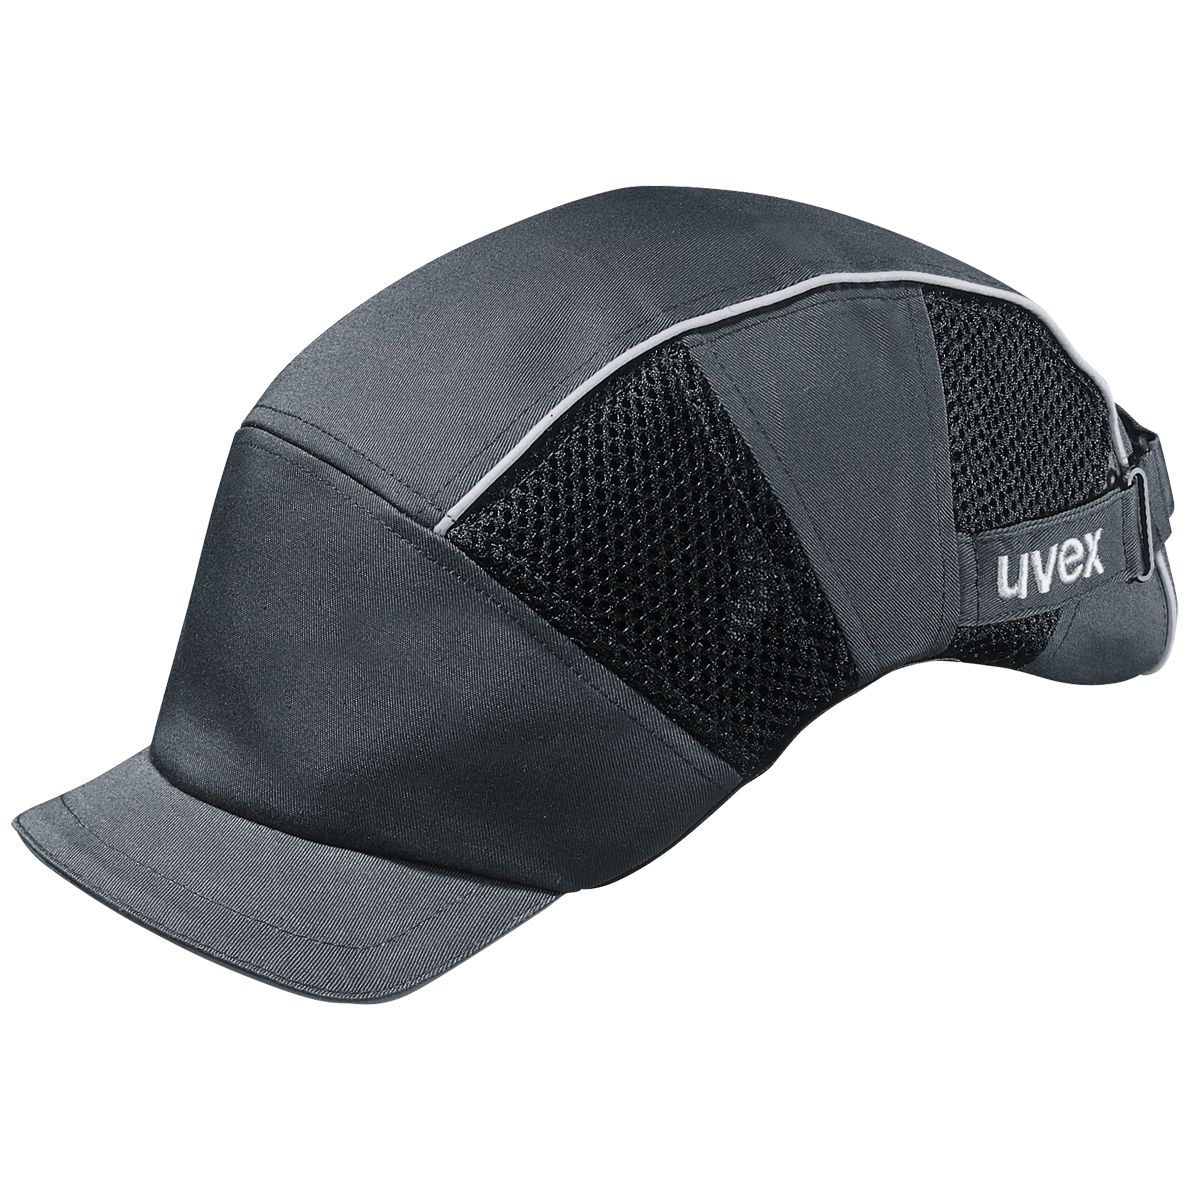 uvex u-cap premium Anstoßkappe - Komfortable Schutzkappe mit kurzem oder langem Schirm - für Bau & Industrie - EN 812